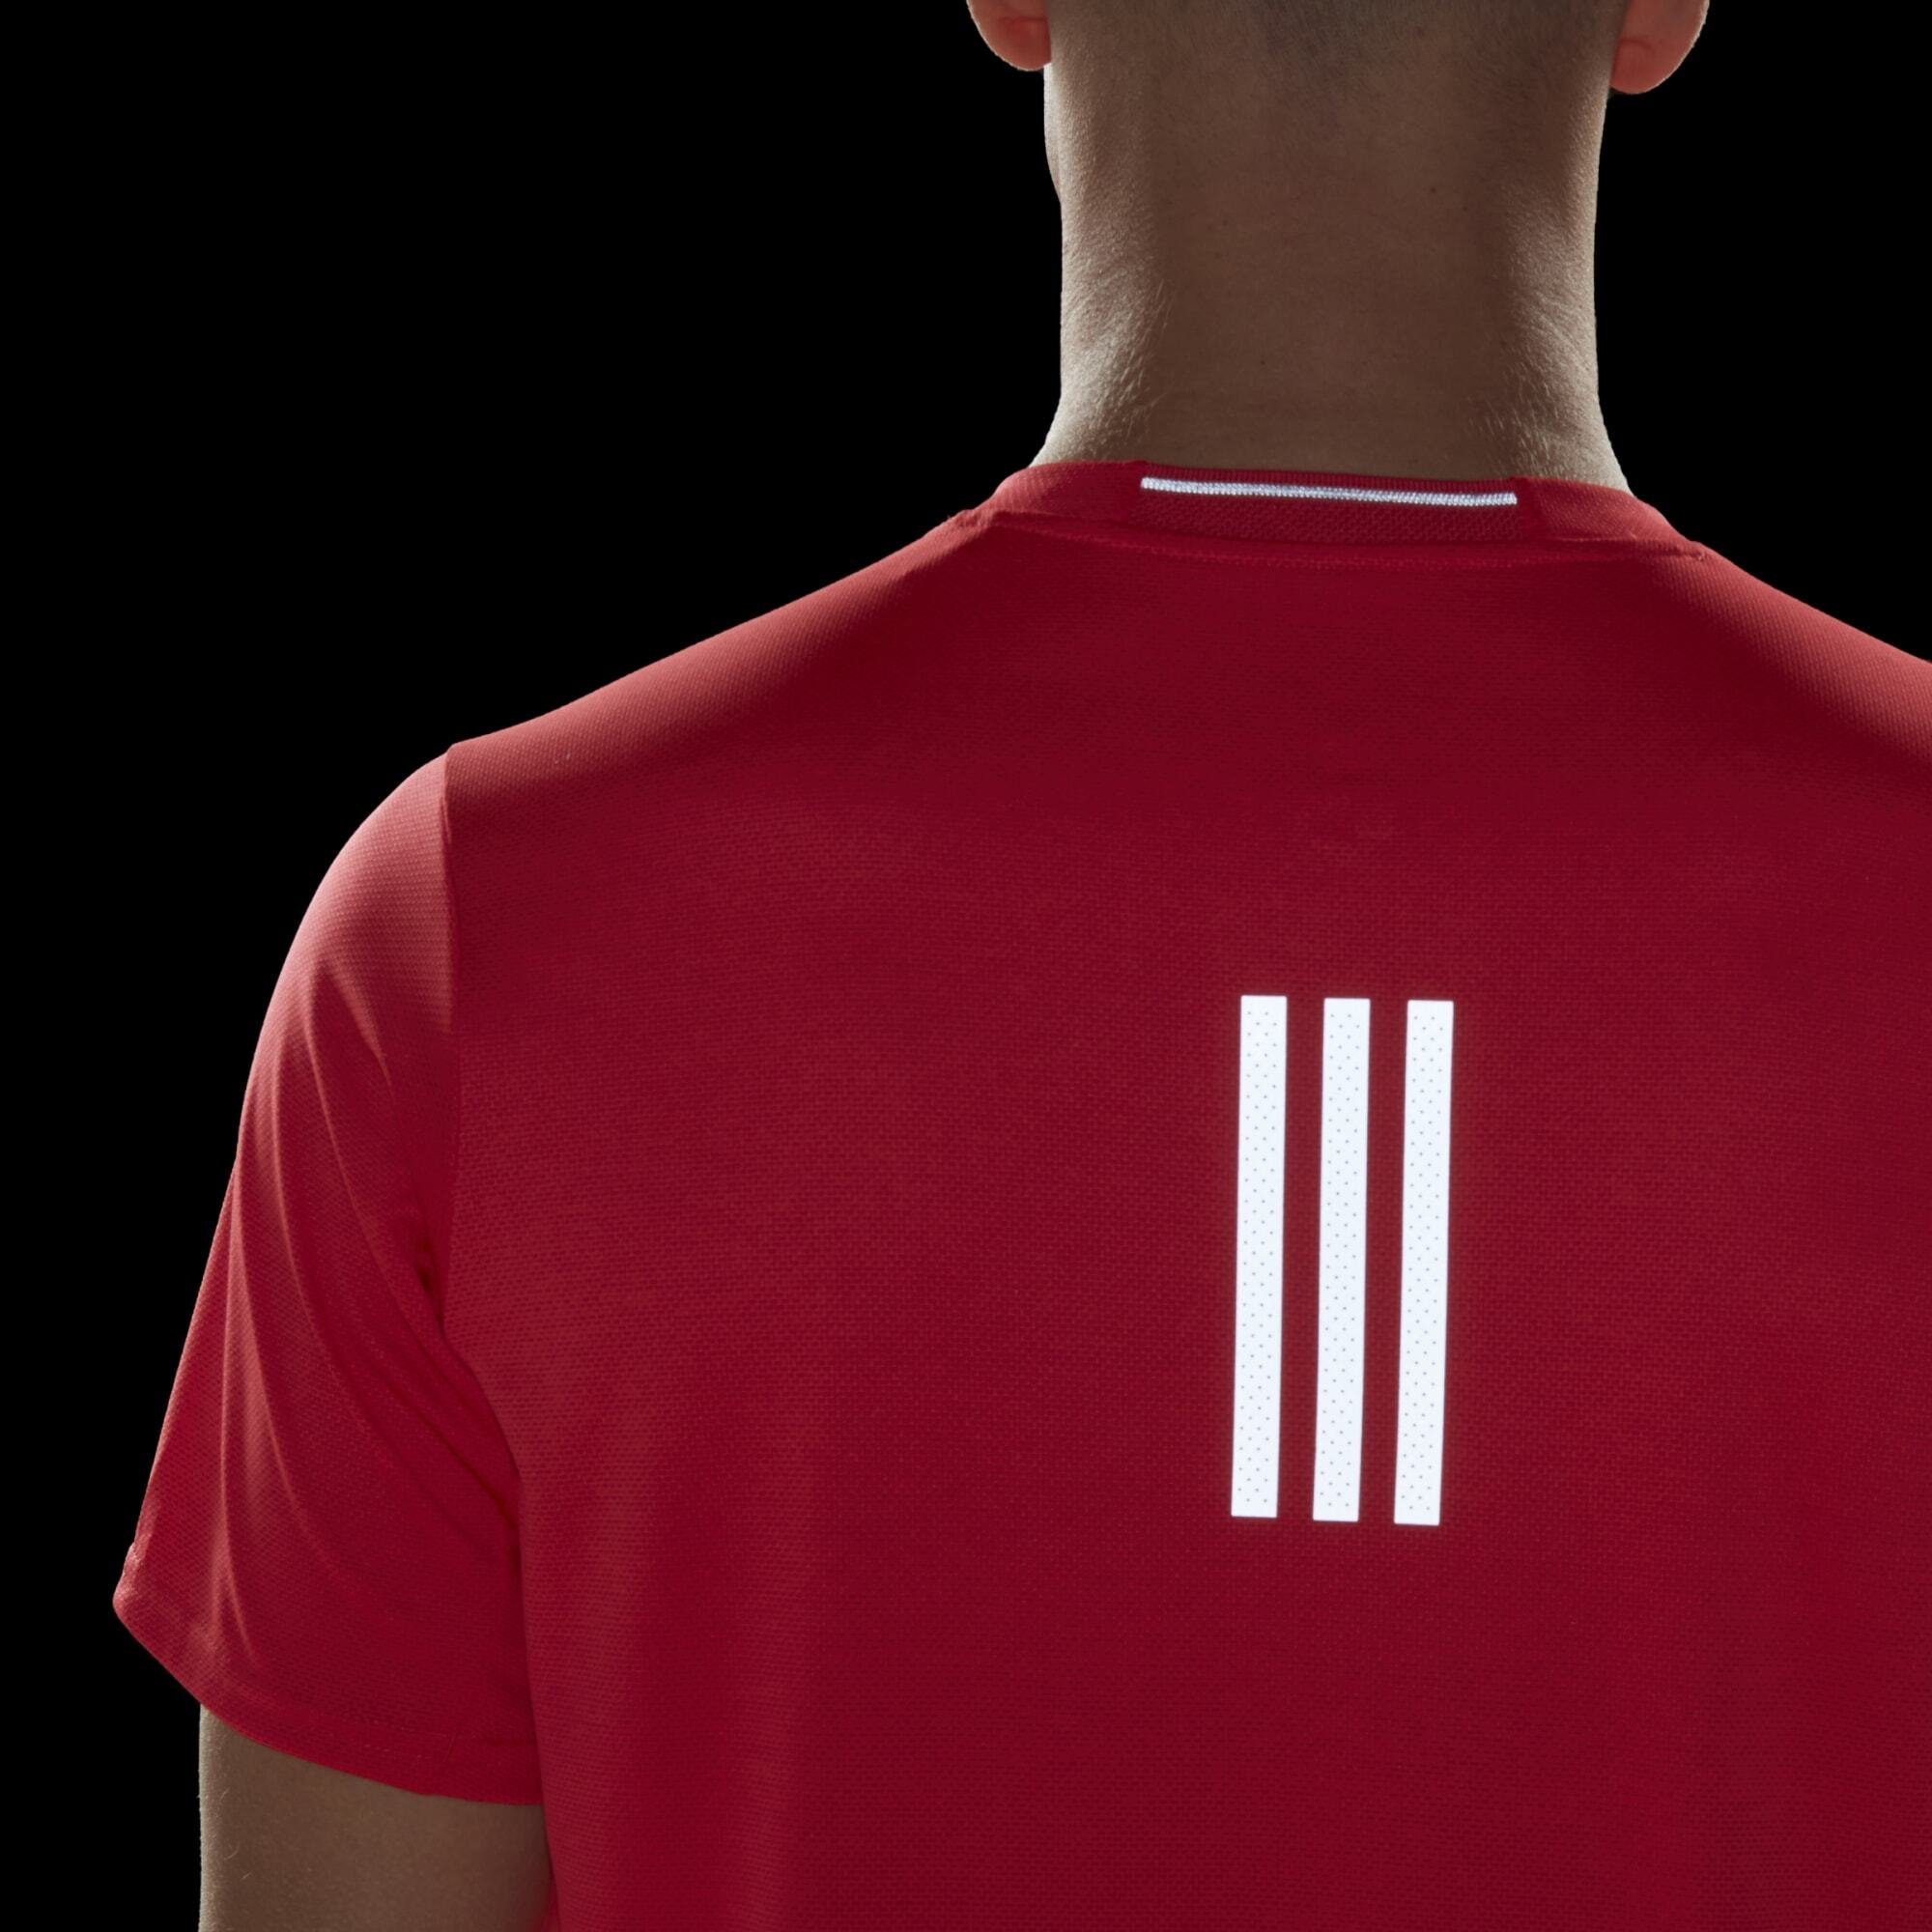 adidas Performance DESIGNED T-SHIRT Bright 4 Red RUNNING Laufshirt